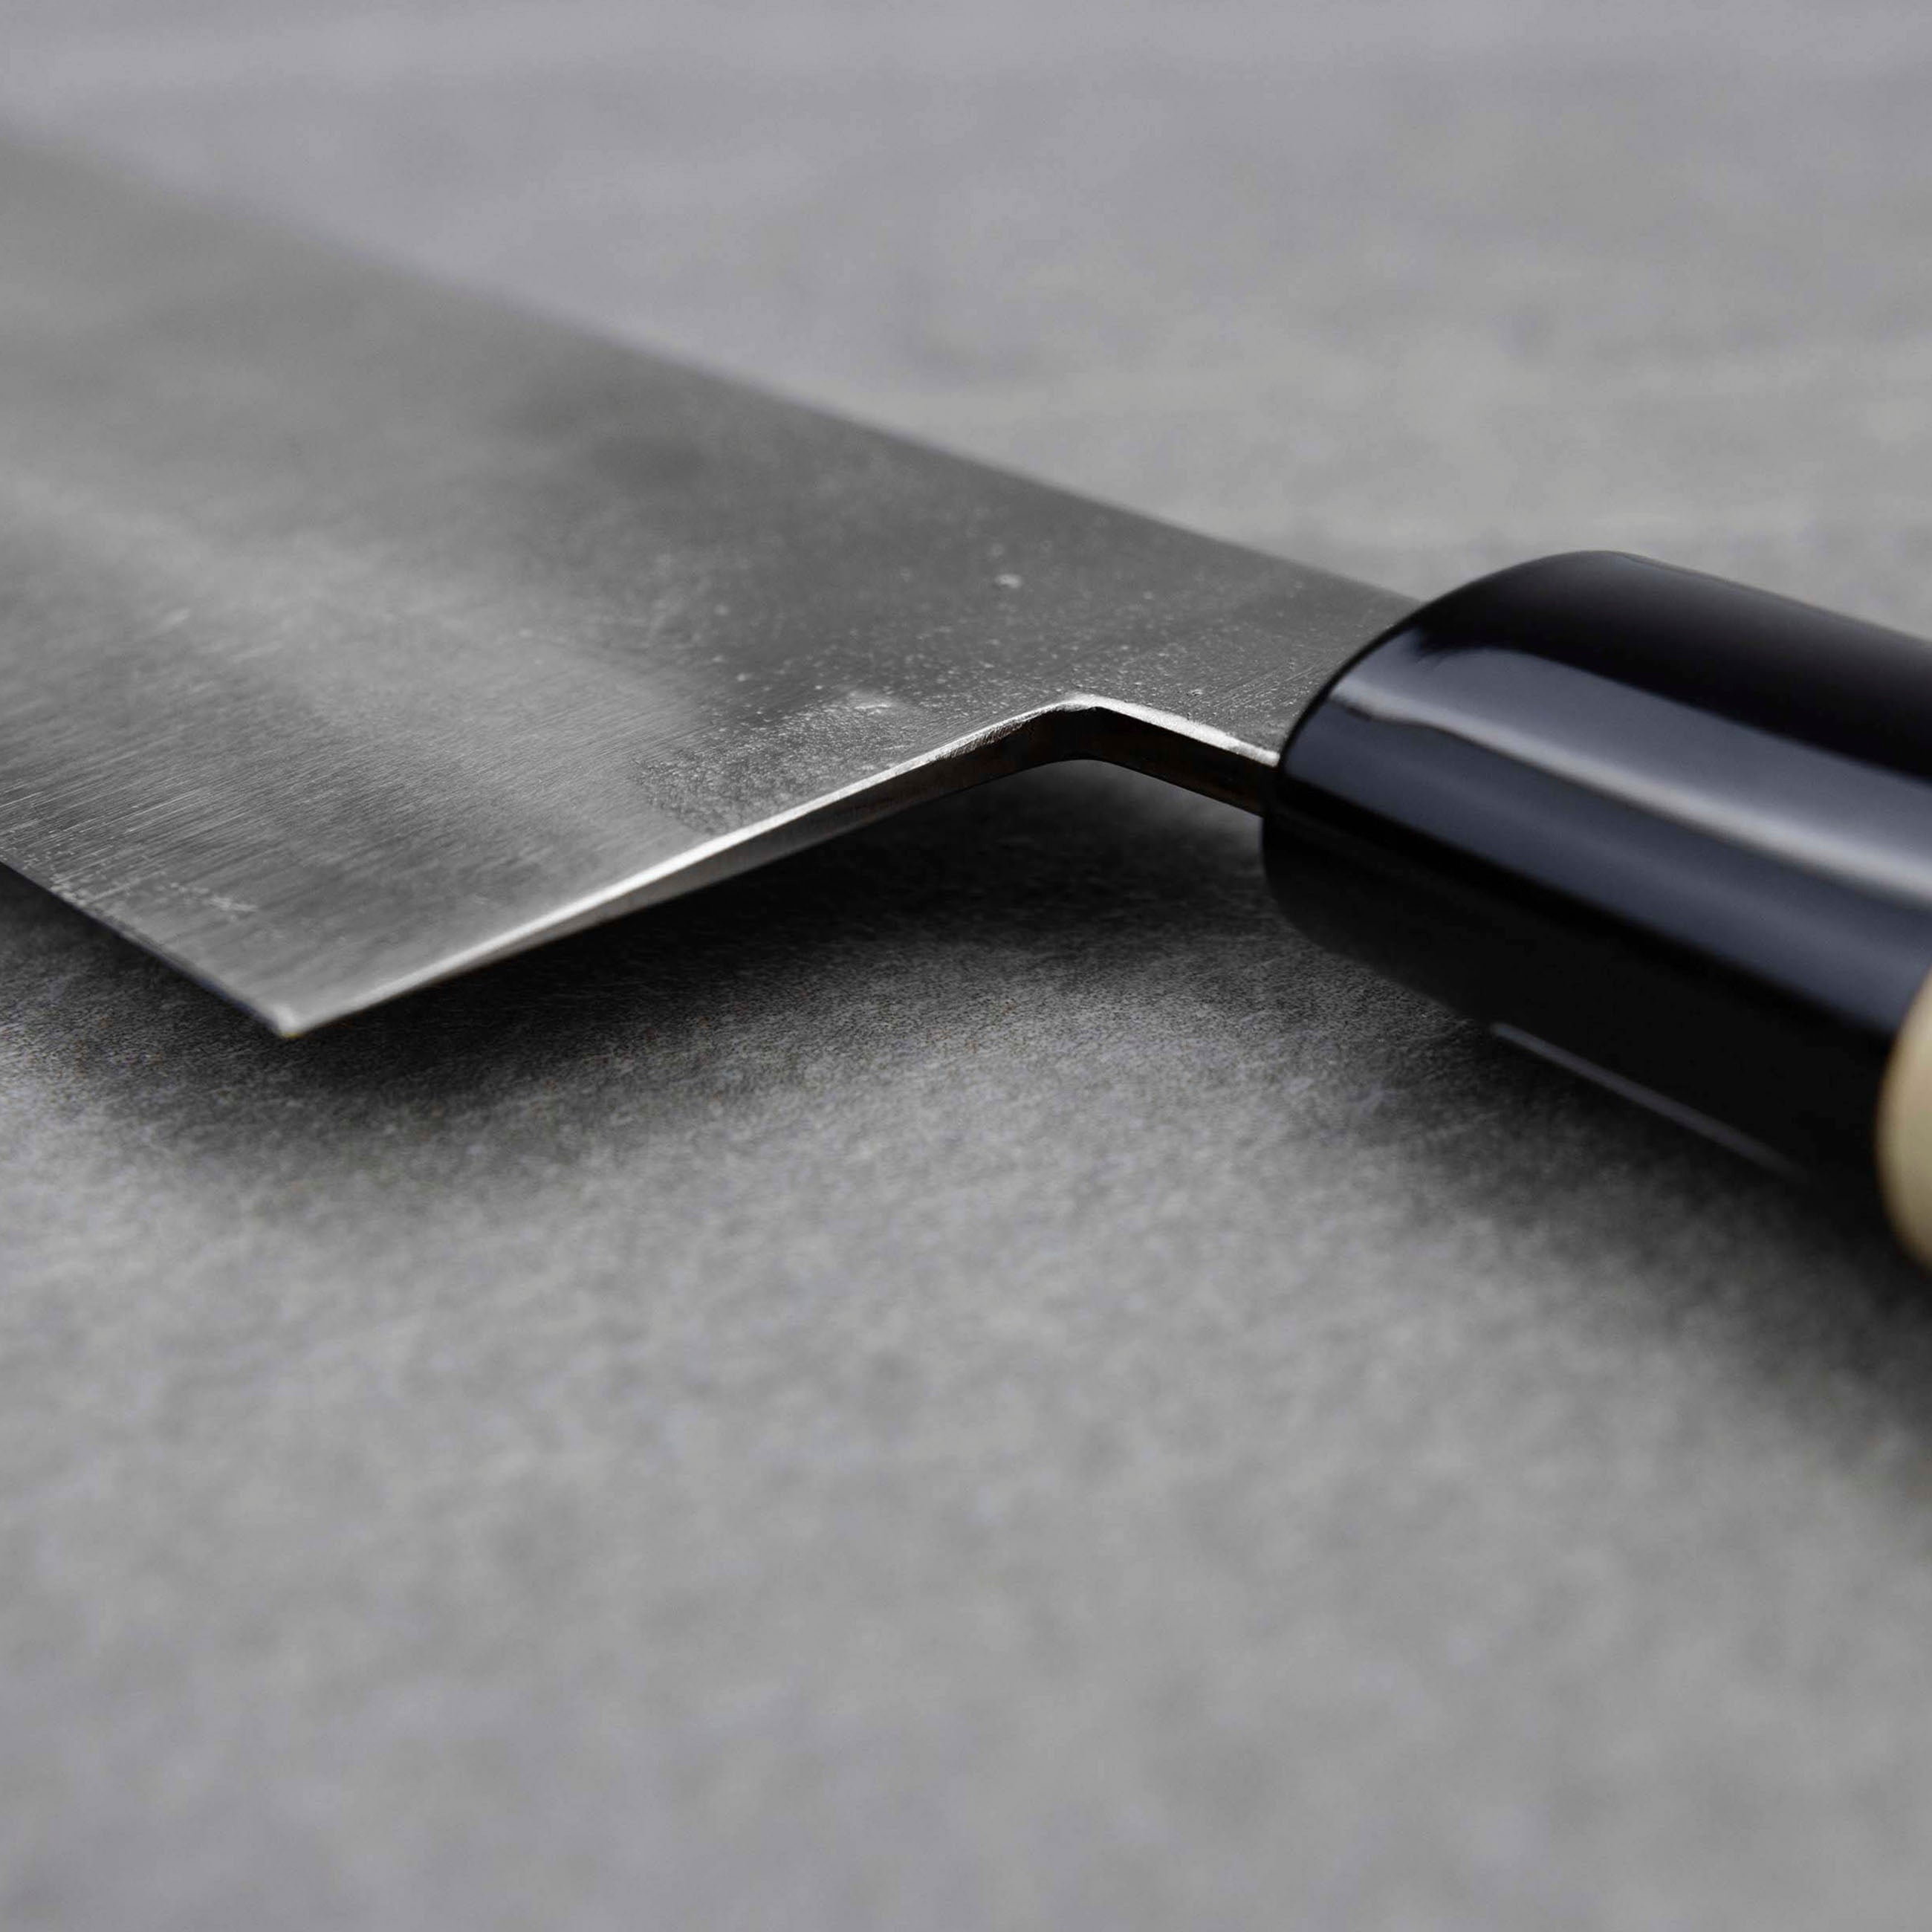 Nůž šéfkuchařský 21 cm Fujiwara Shirogami